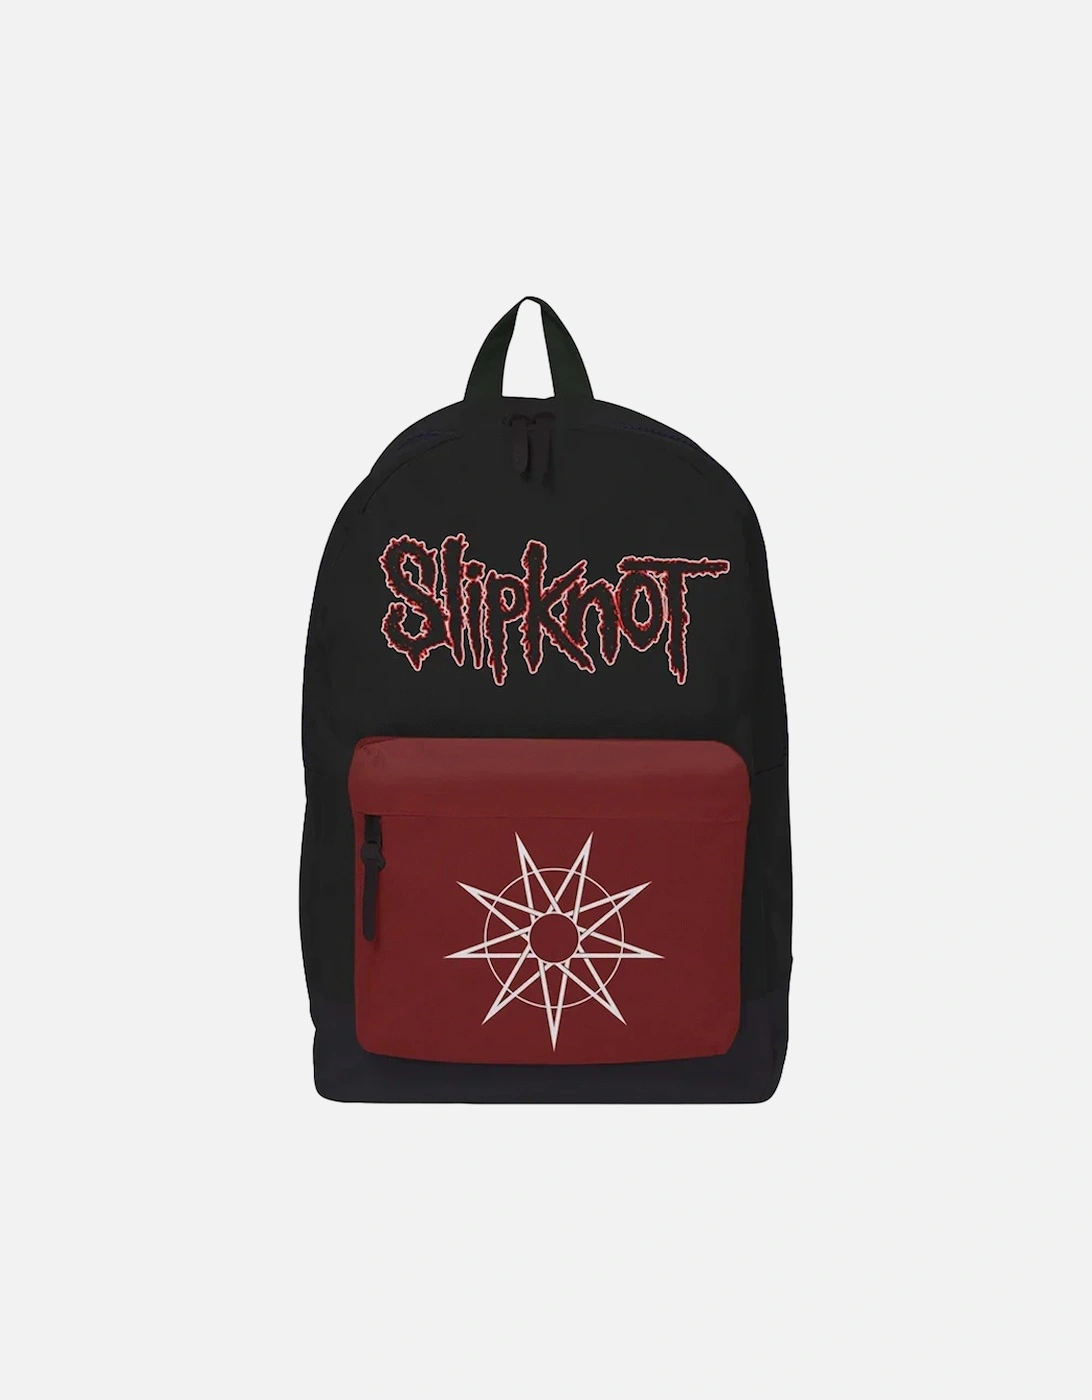 WANYK Star Slipknot Backpack, 2 of 1